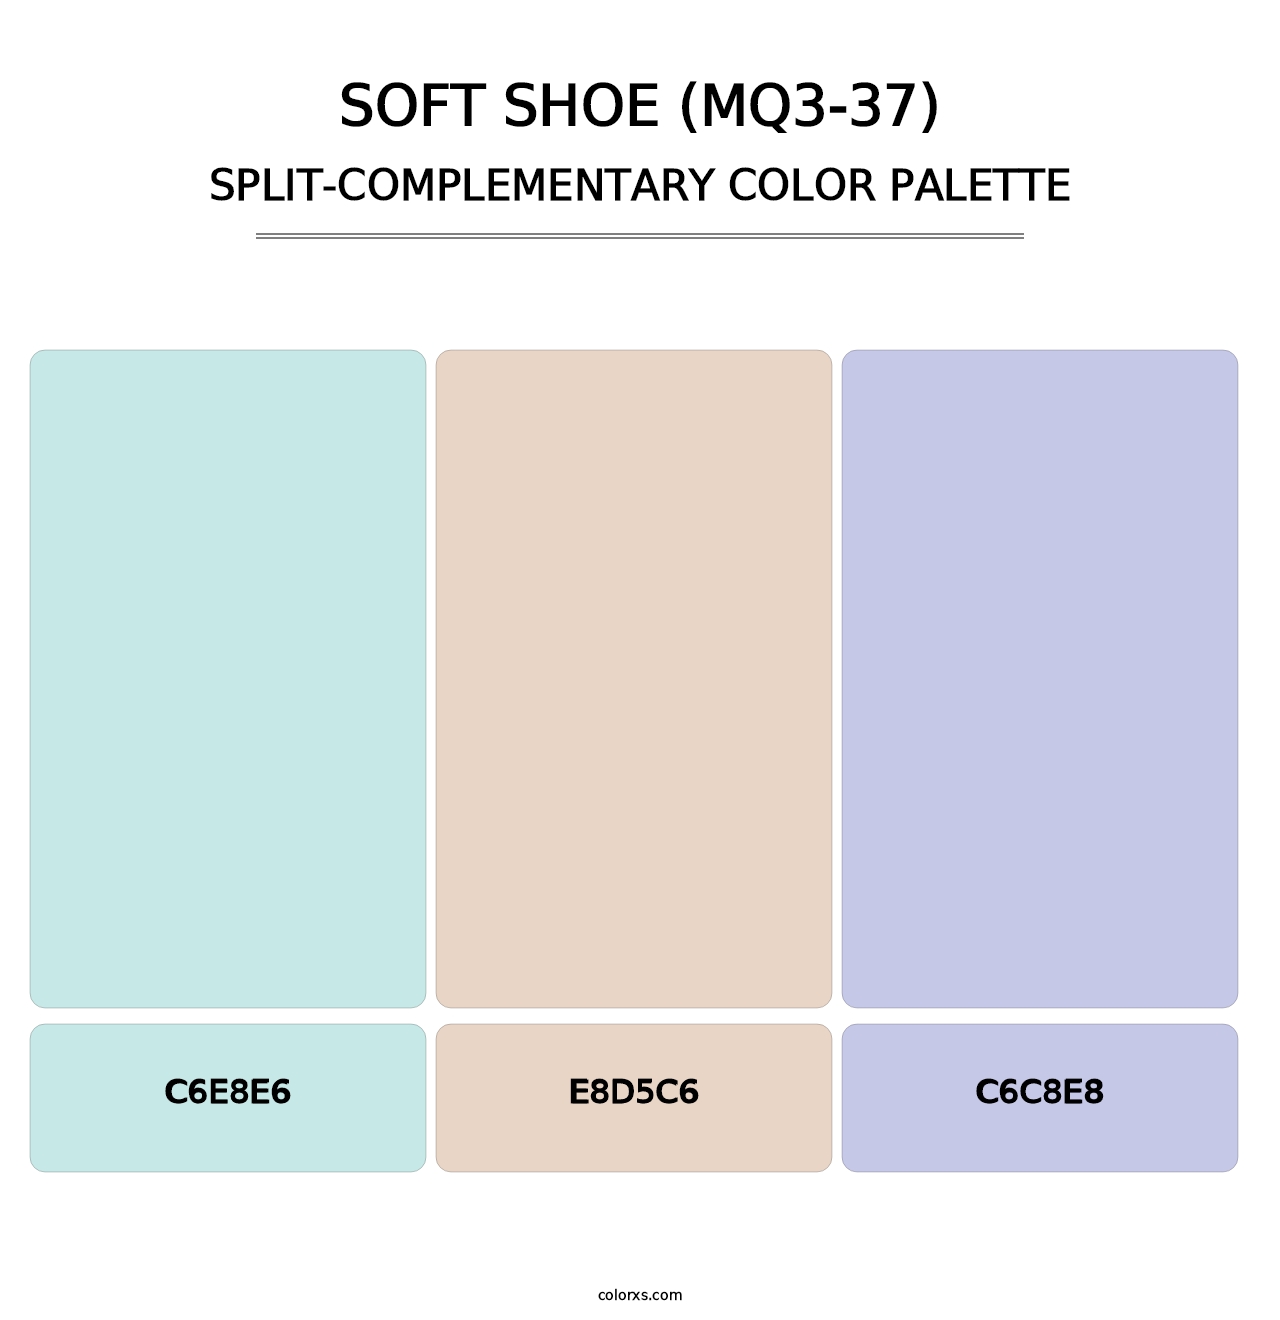 Soft Shoe (MQ3-37) - Split-Complementary Color Palette